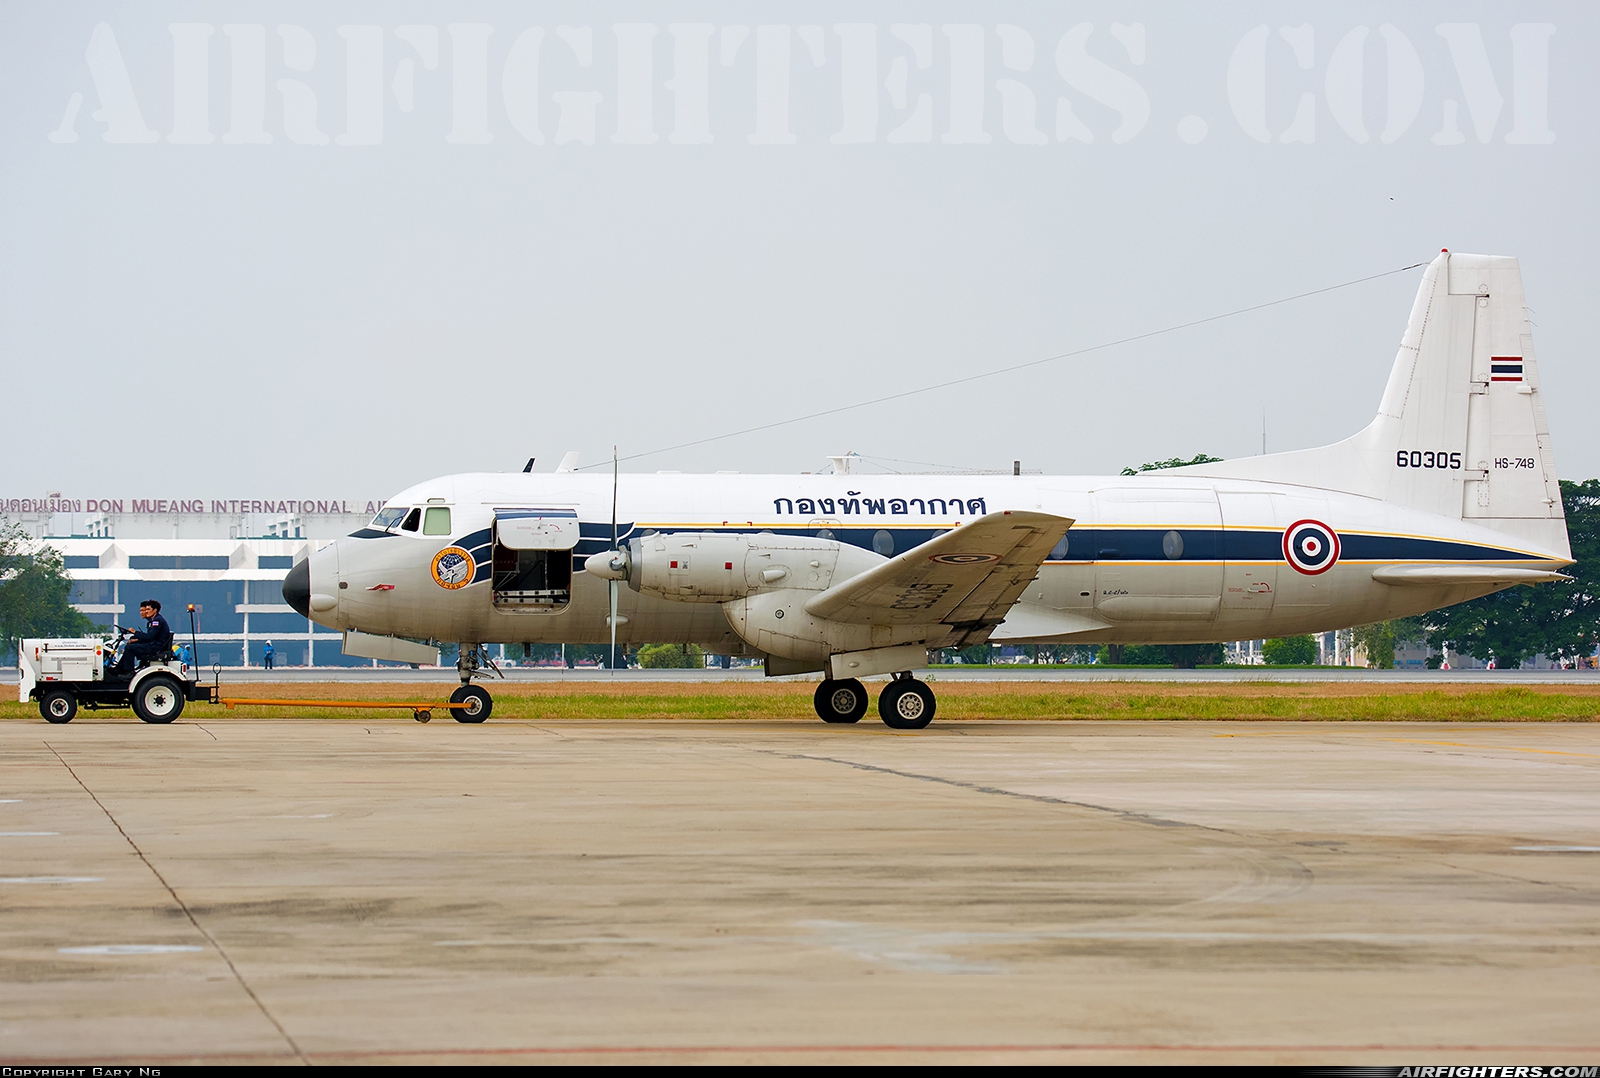 Thailand - Air Force Hawker Siddeley HS-748 Srs2/208 Andover L5-5/26 at Bangkok - Int. (Don Muang) (DMK / VTBD), Thailand